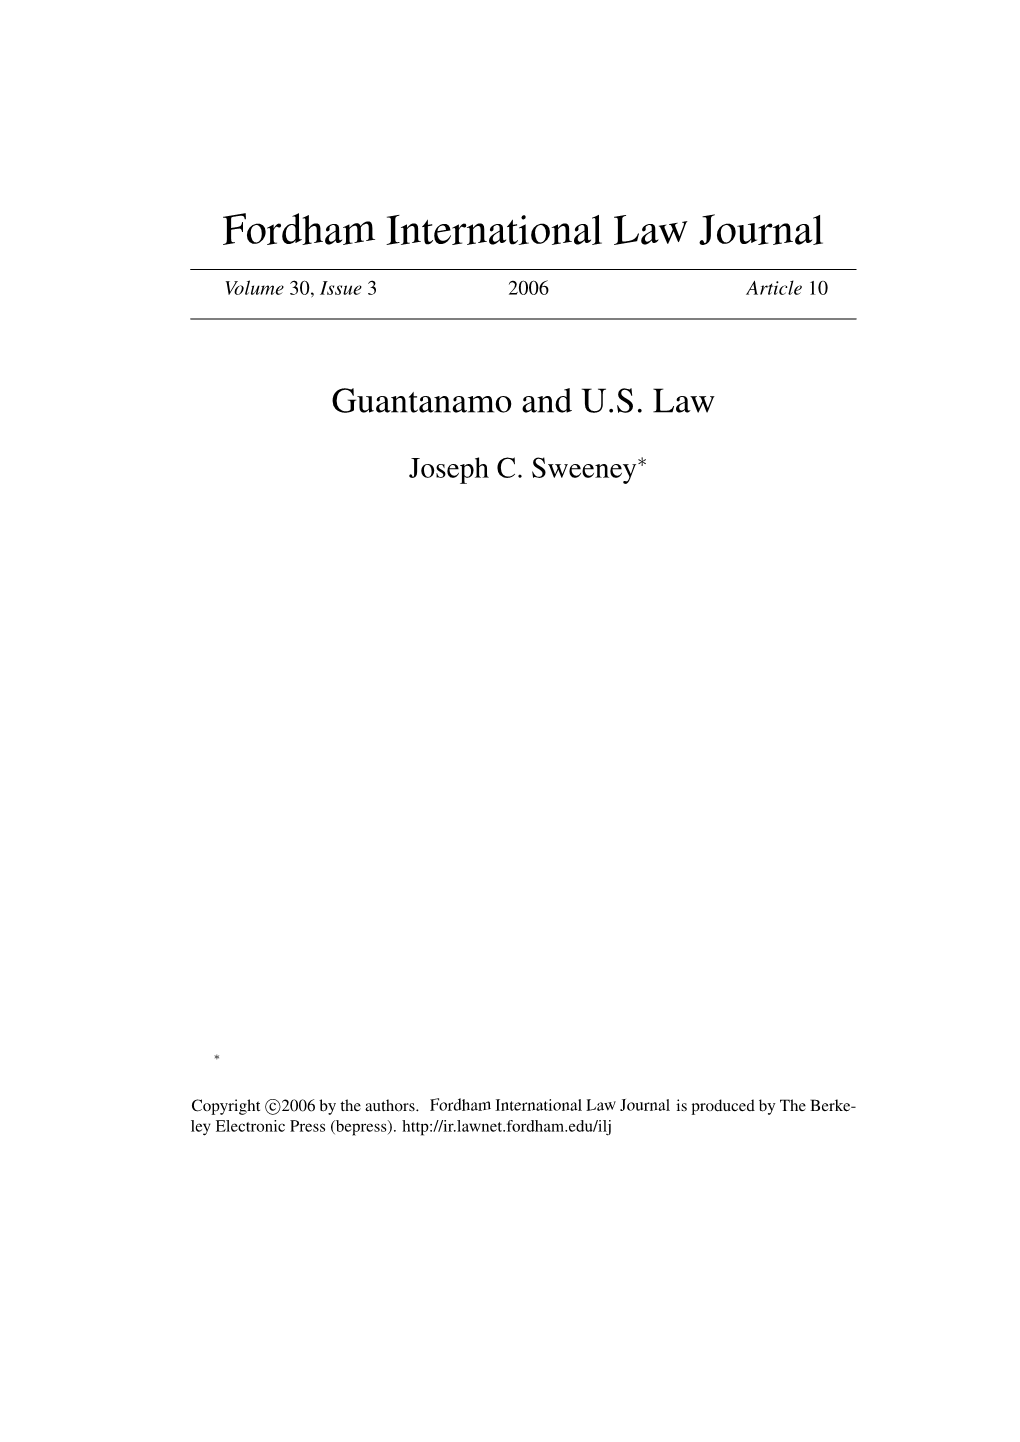 Guantanamo and U.S. Law